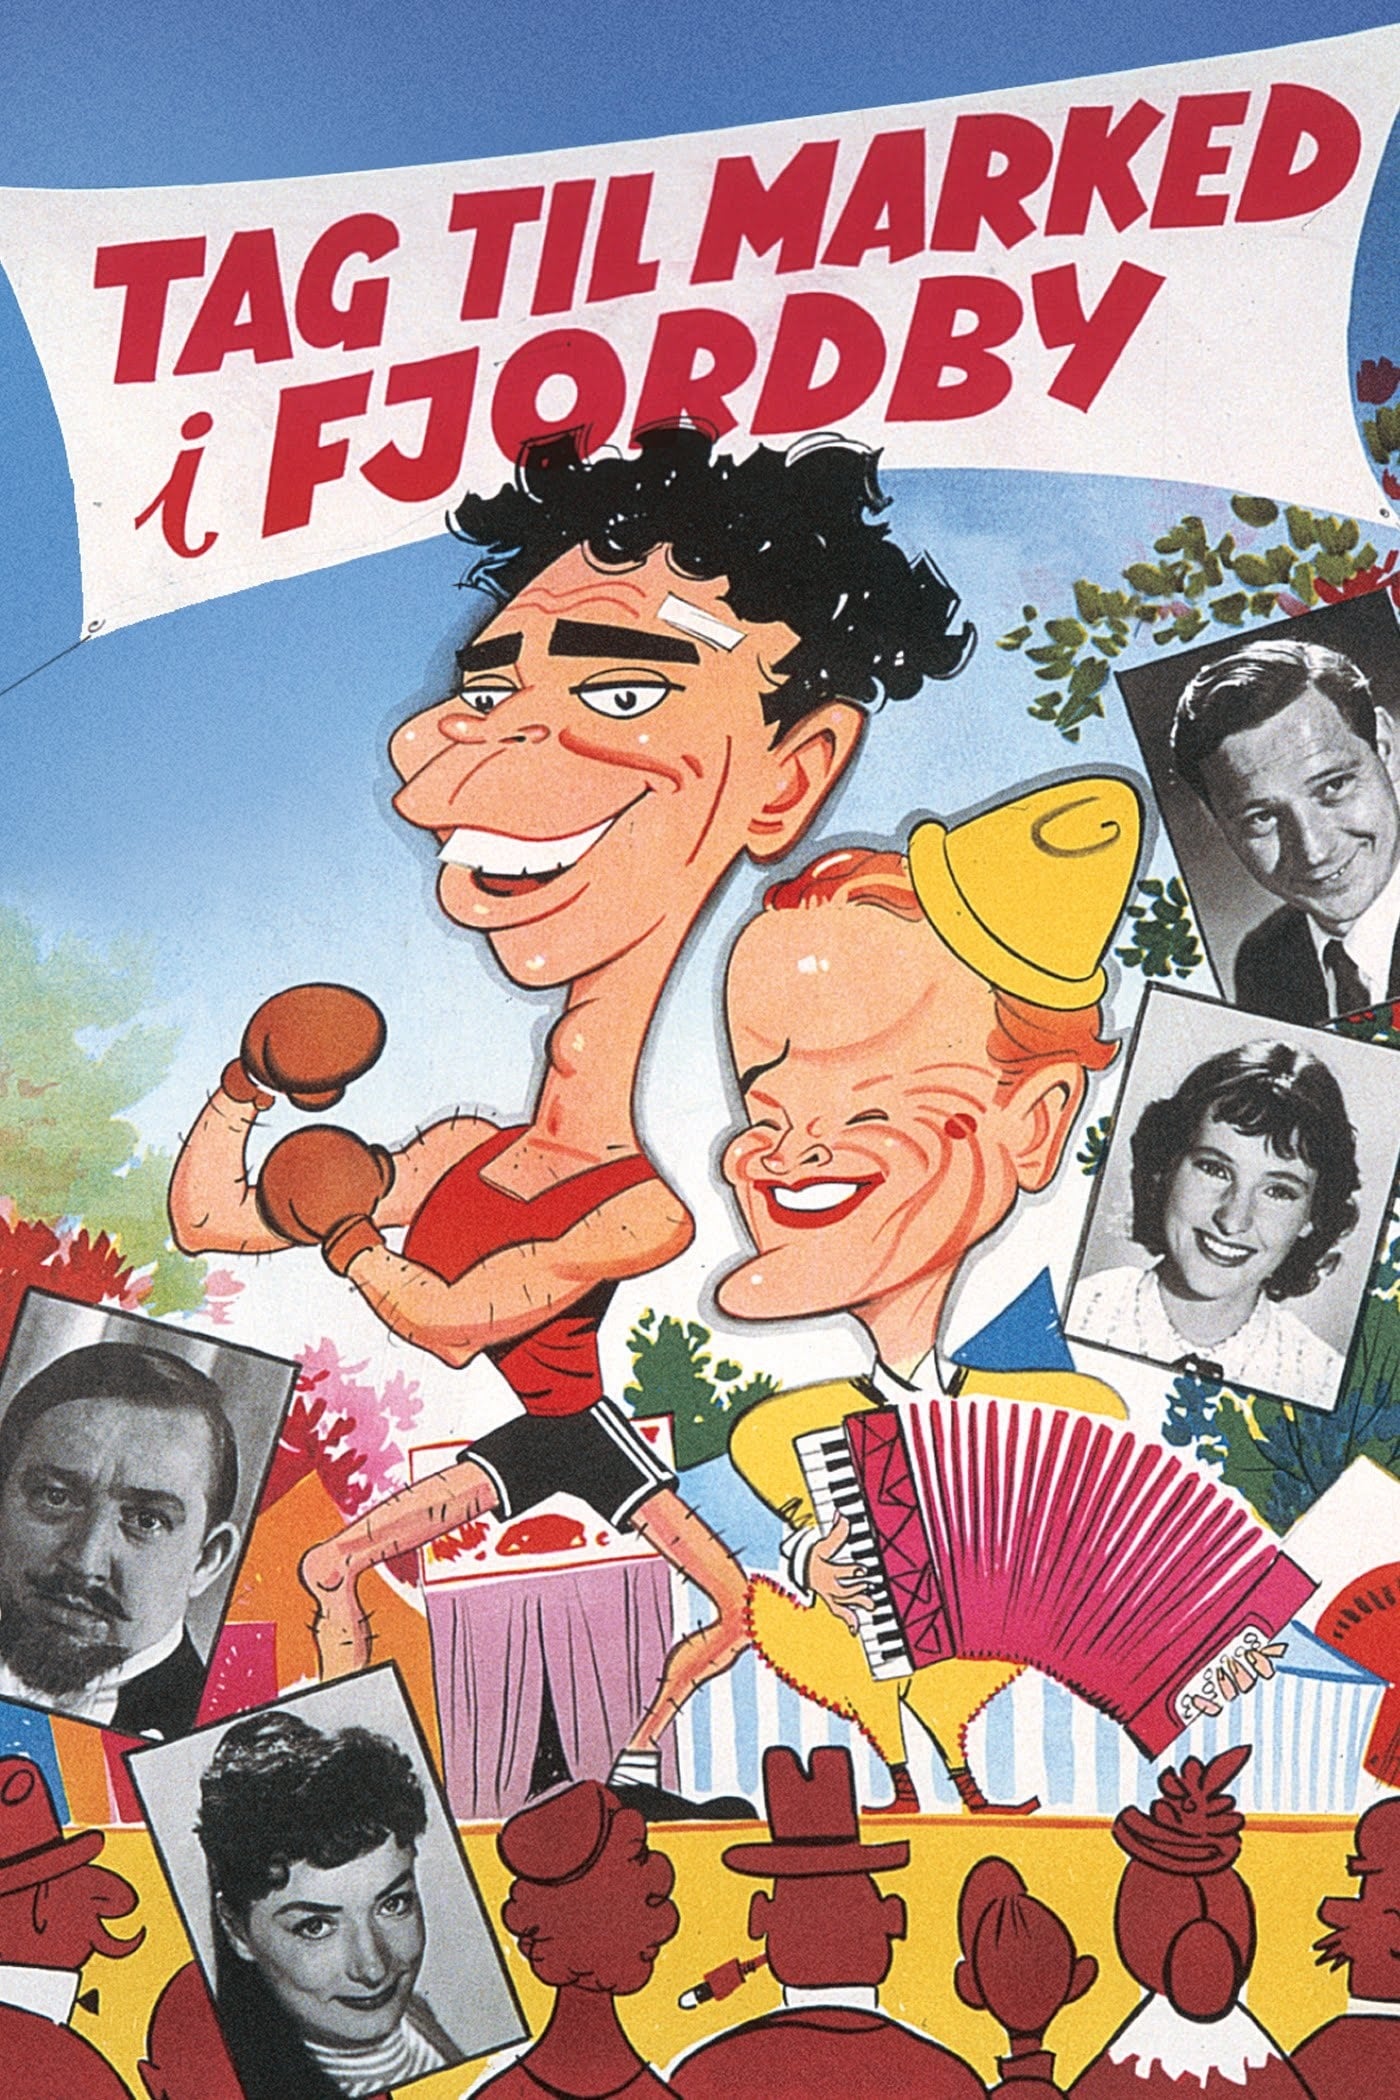 Tag til marked i Fjordby (1957)